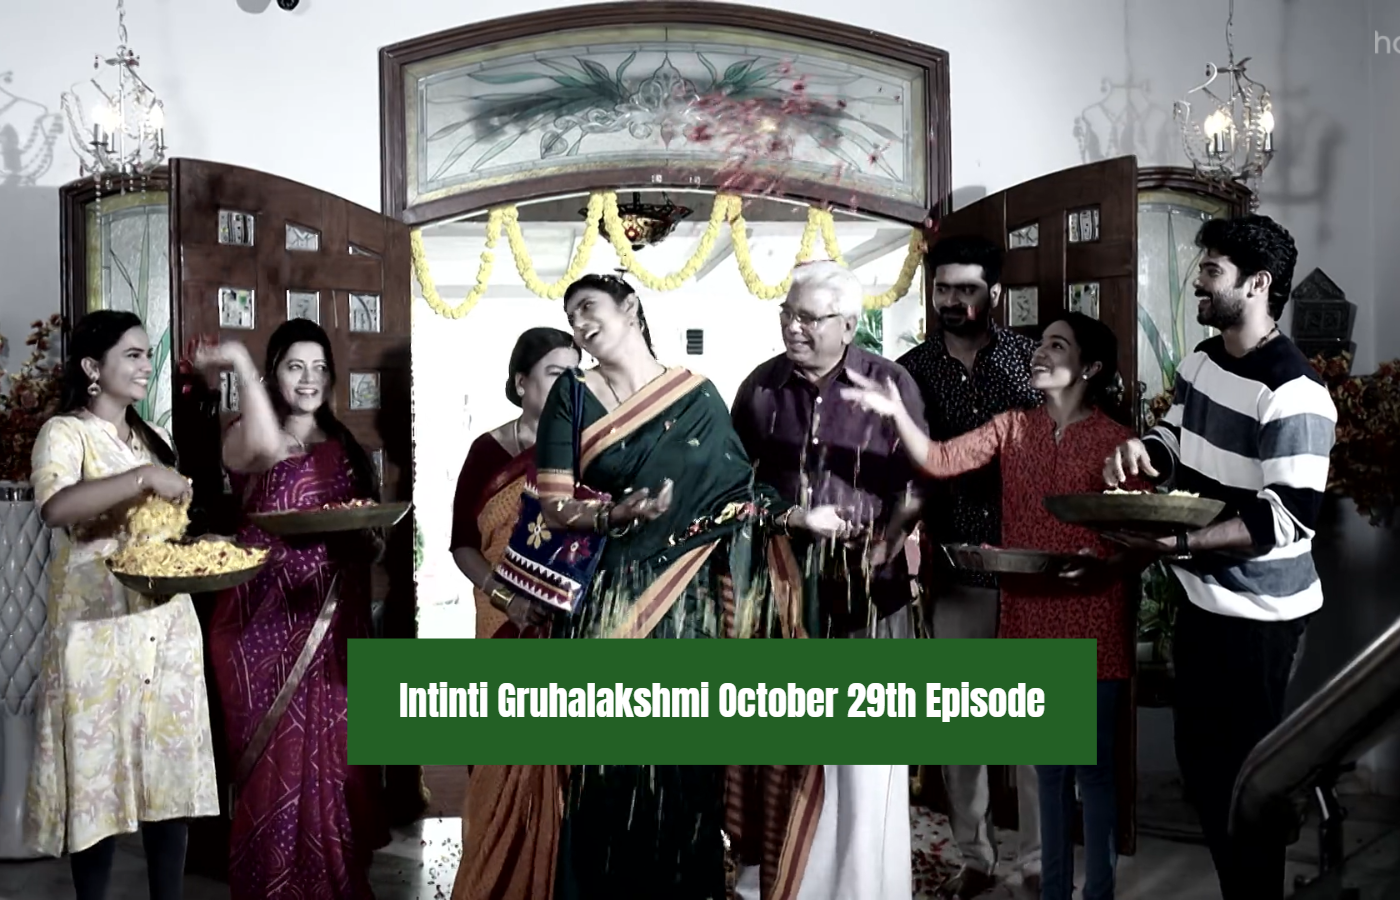 Intinti Gruhalakshmi October 29th Episode